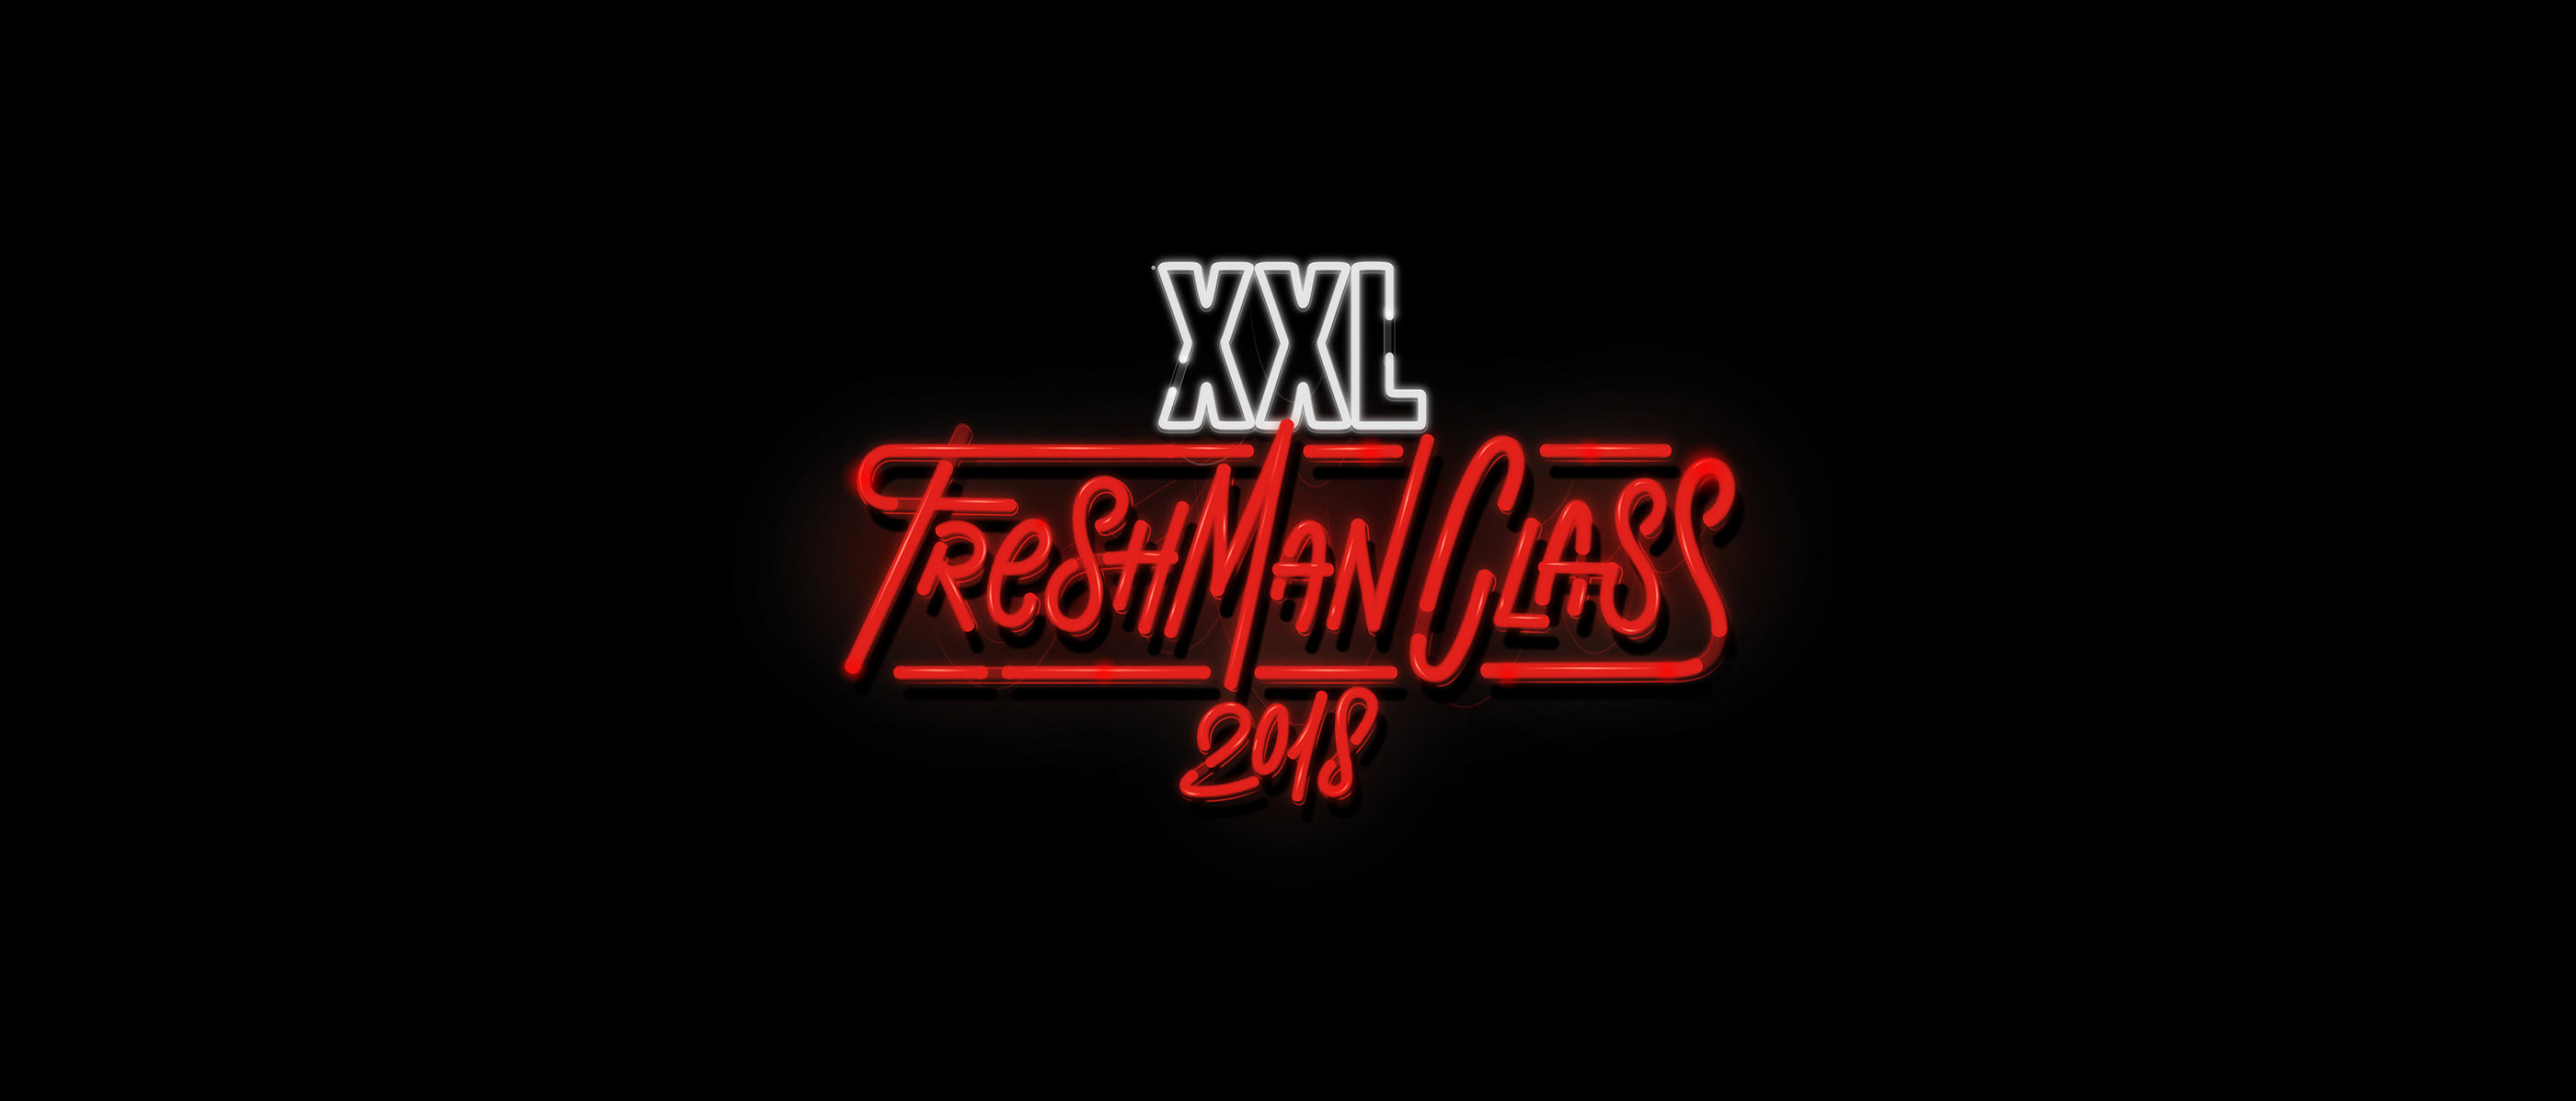 Xxl freshman 2018